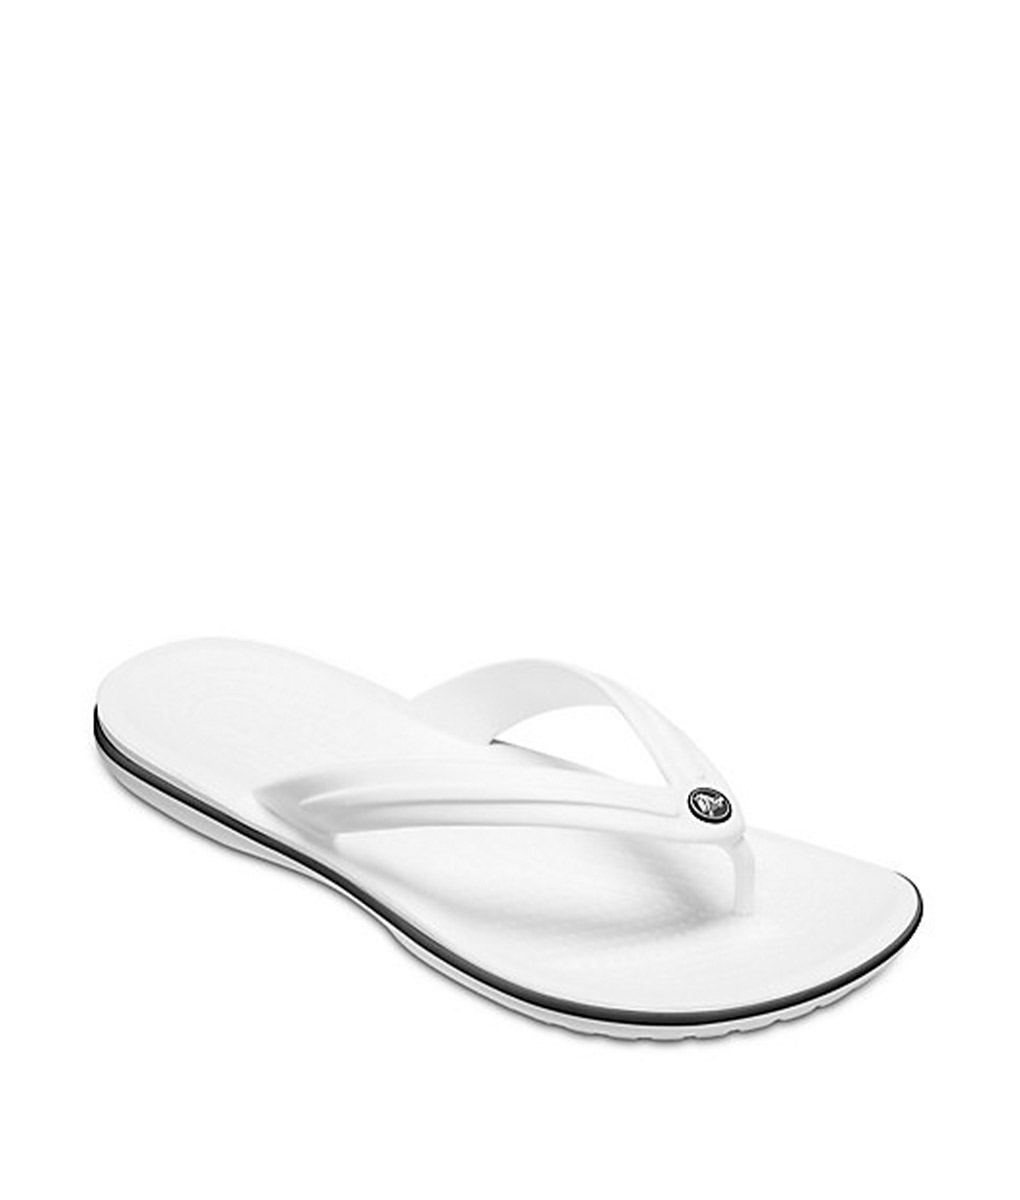 crocs white flip flops